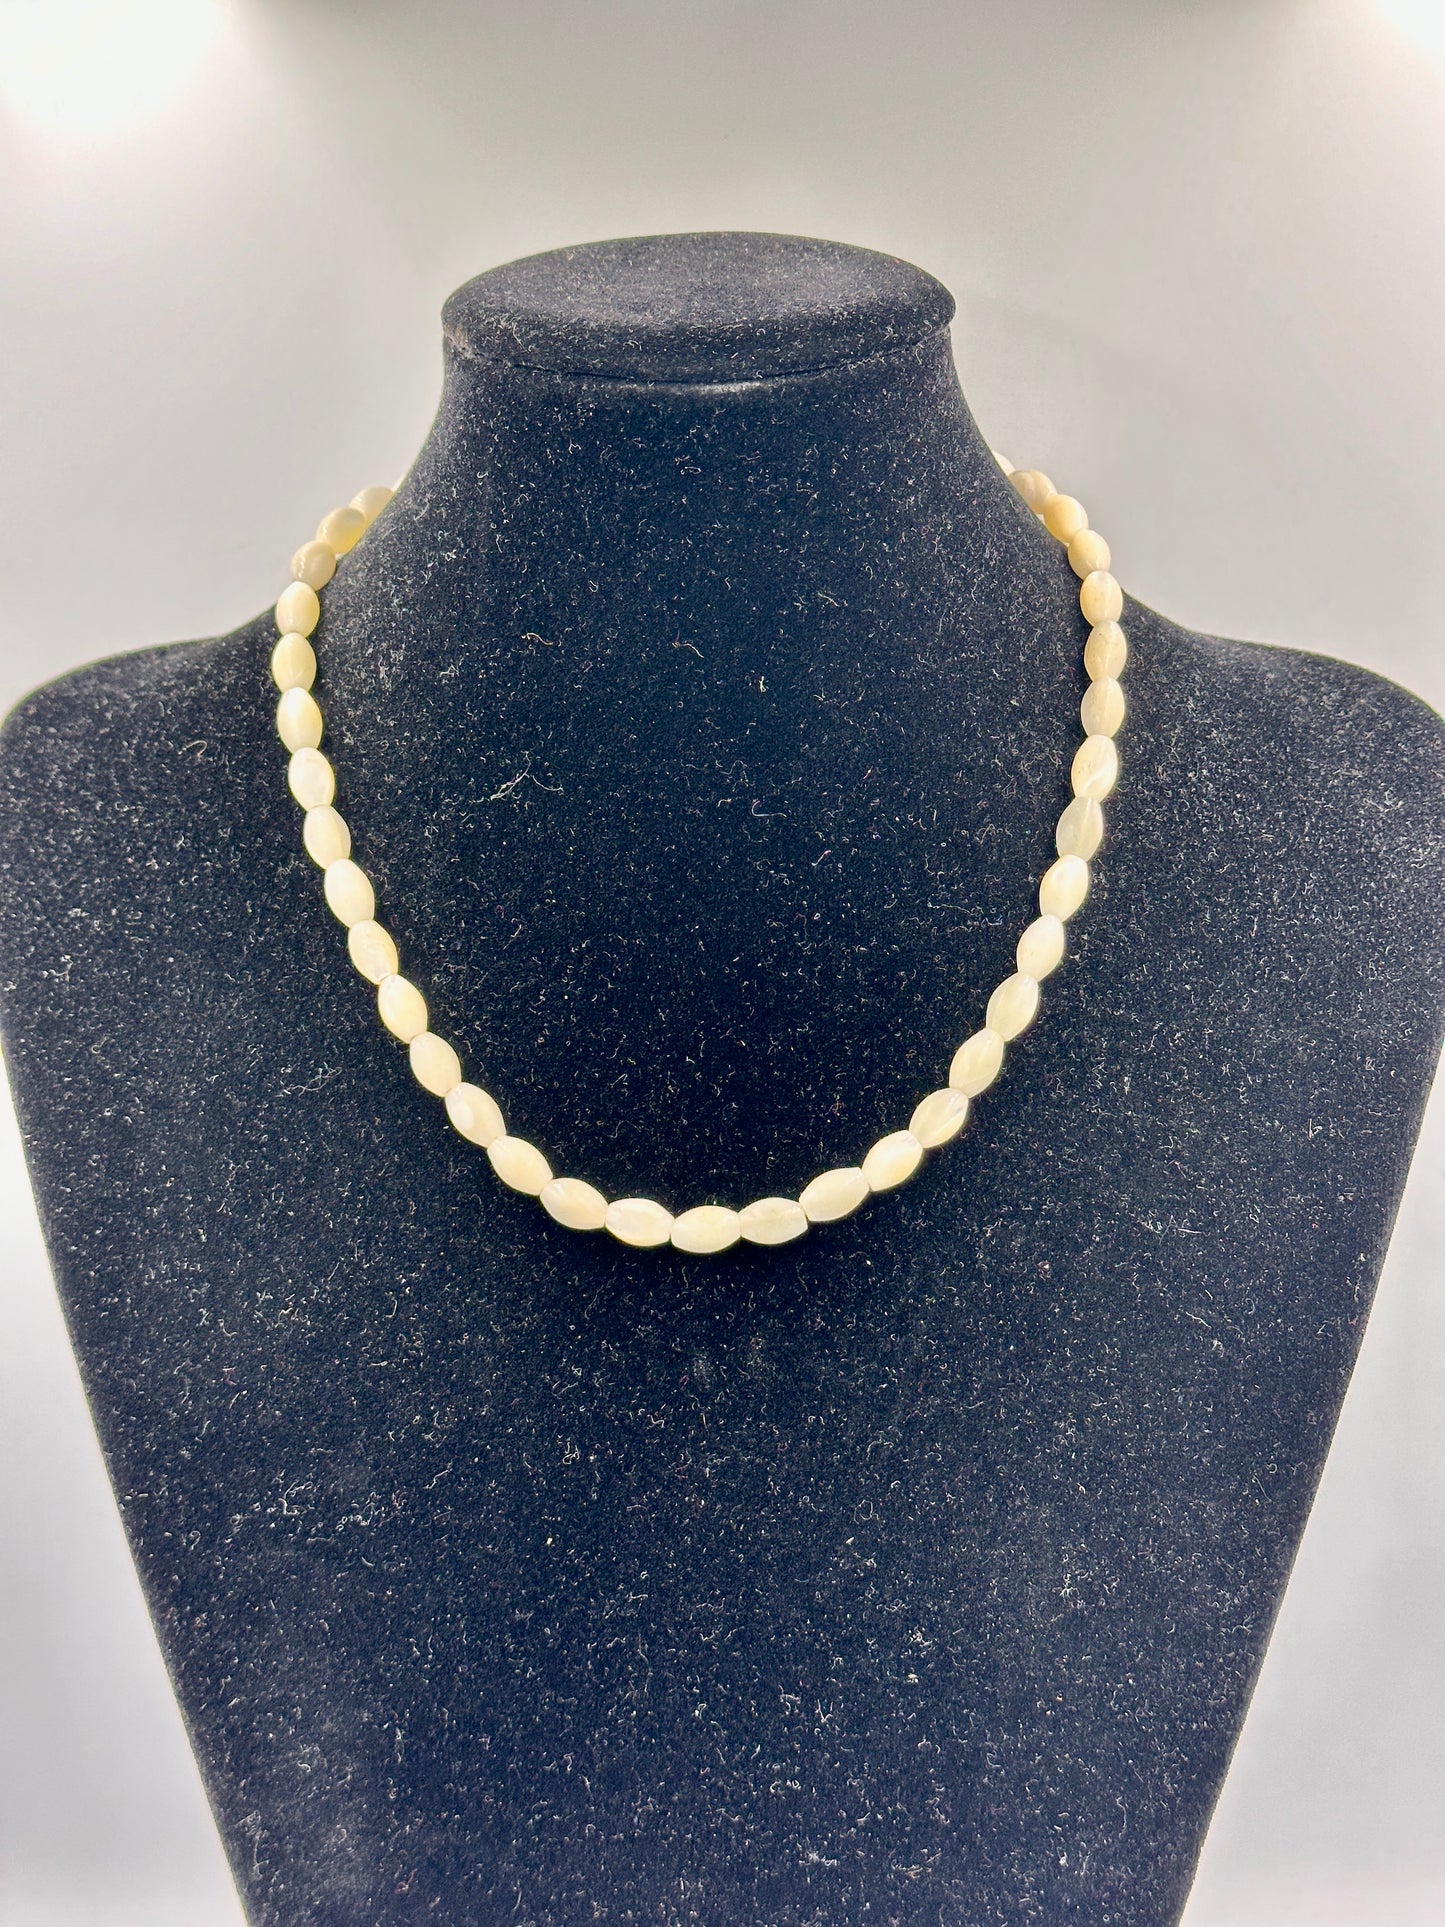 Antike Perlenkette mit Olivförmigen Perlen und Silberfarbenem Verschluss